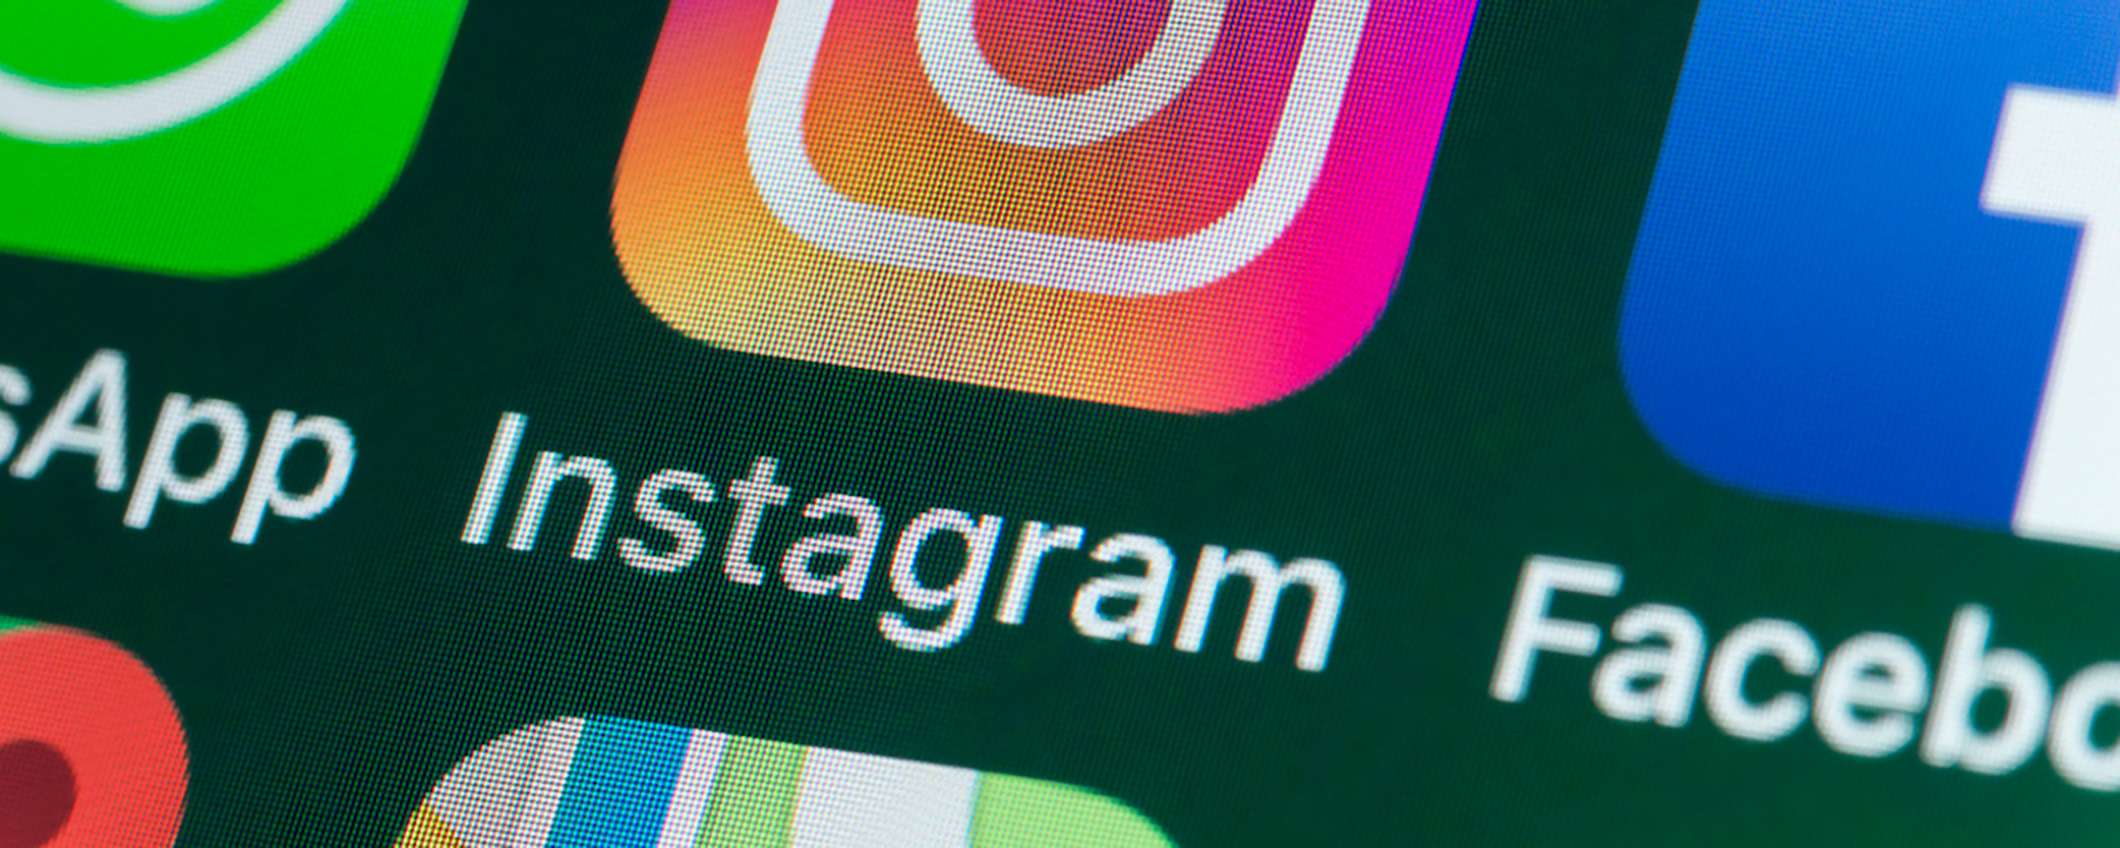 Come fare su Instagram: creare filtri per le storie